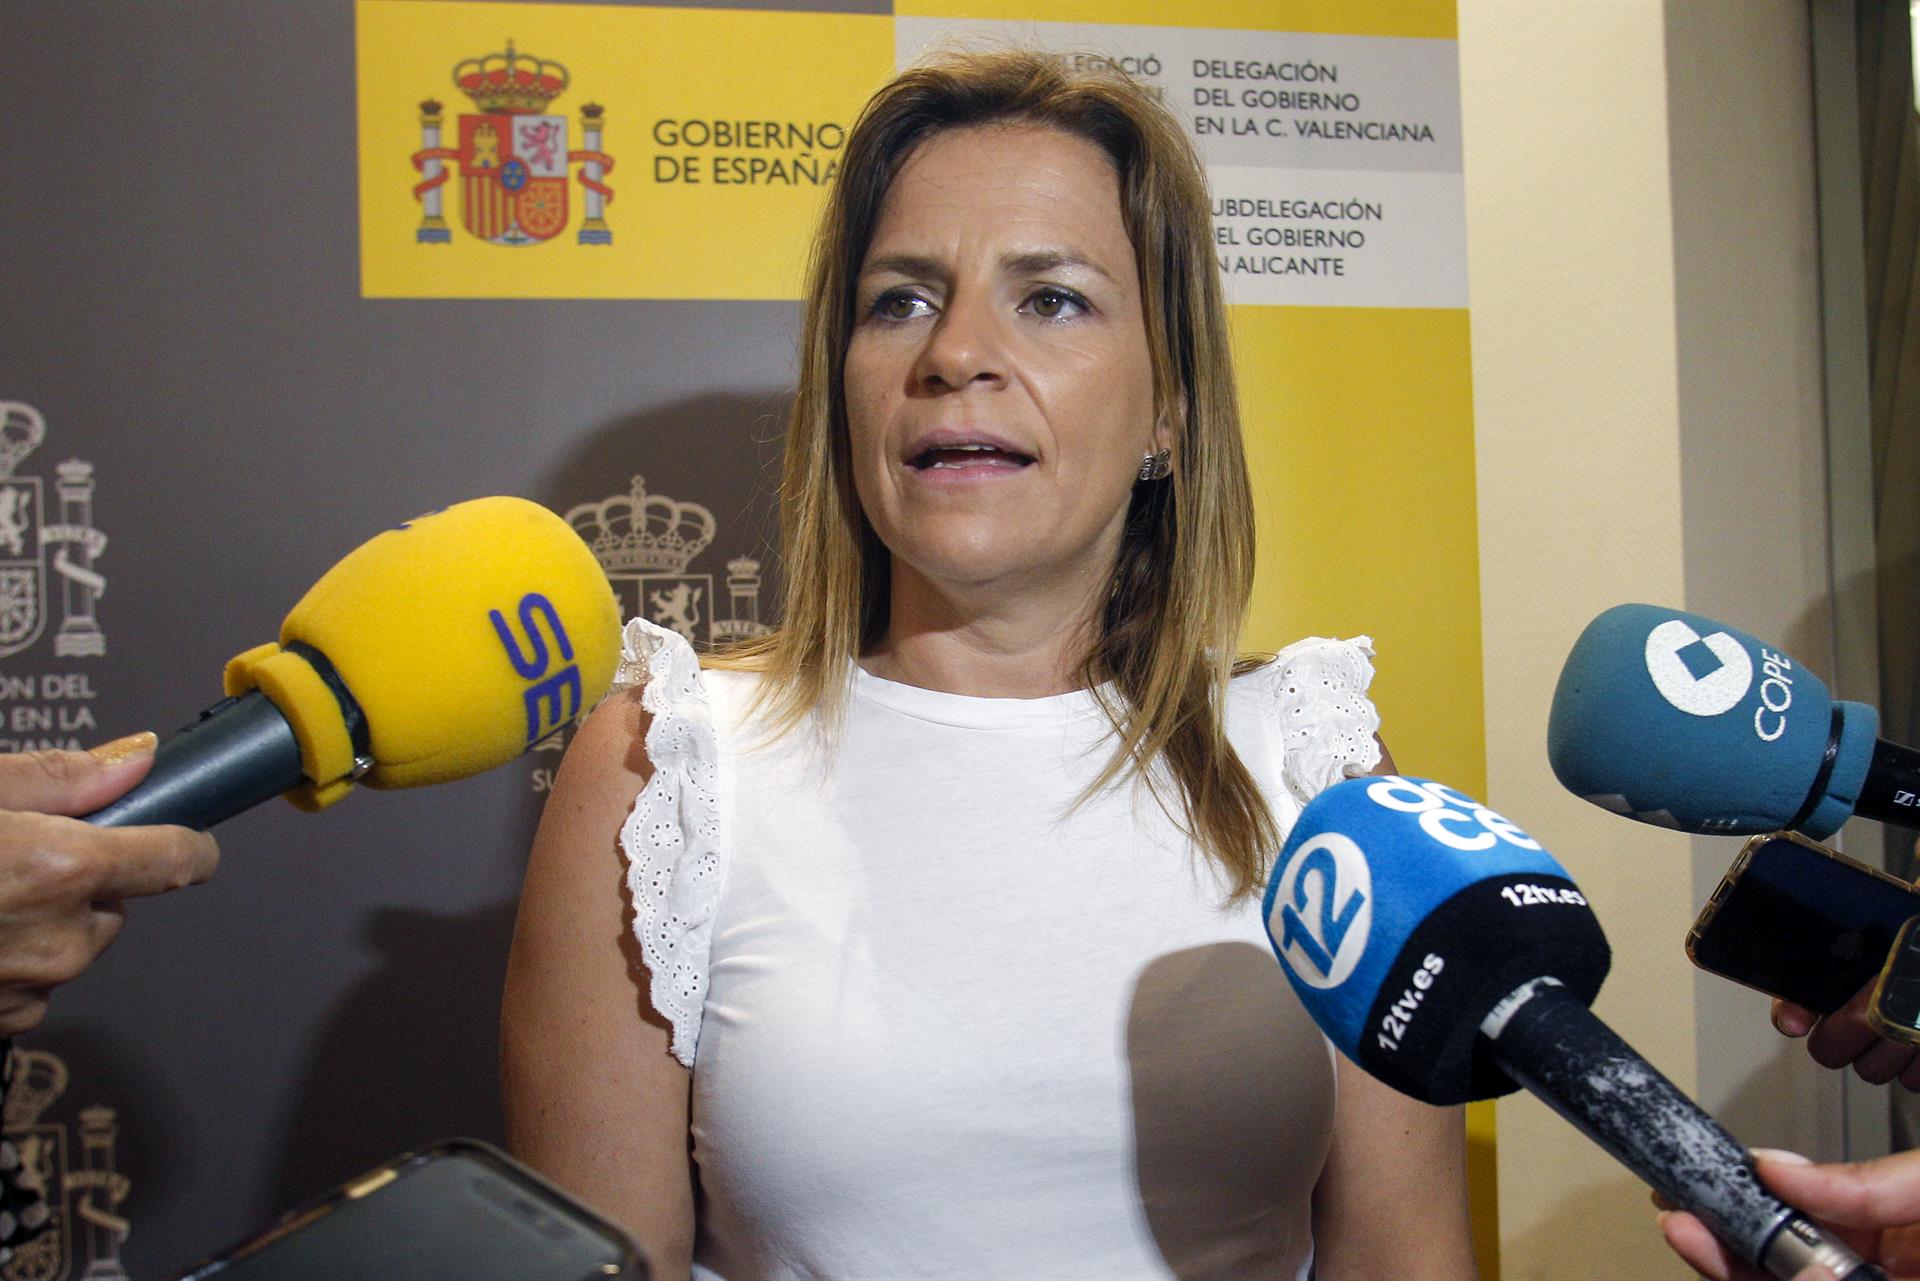 La delegada del Gobierno en la Comunitat Valenciana, Pilar Bernabé. Archivo/ EFE/Morell